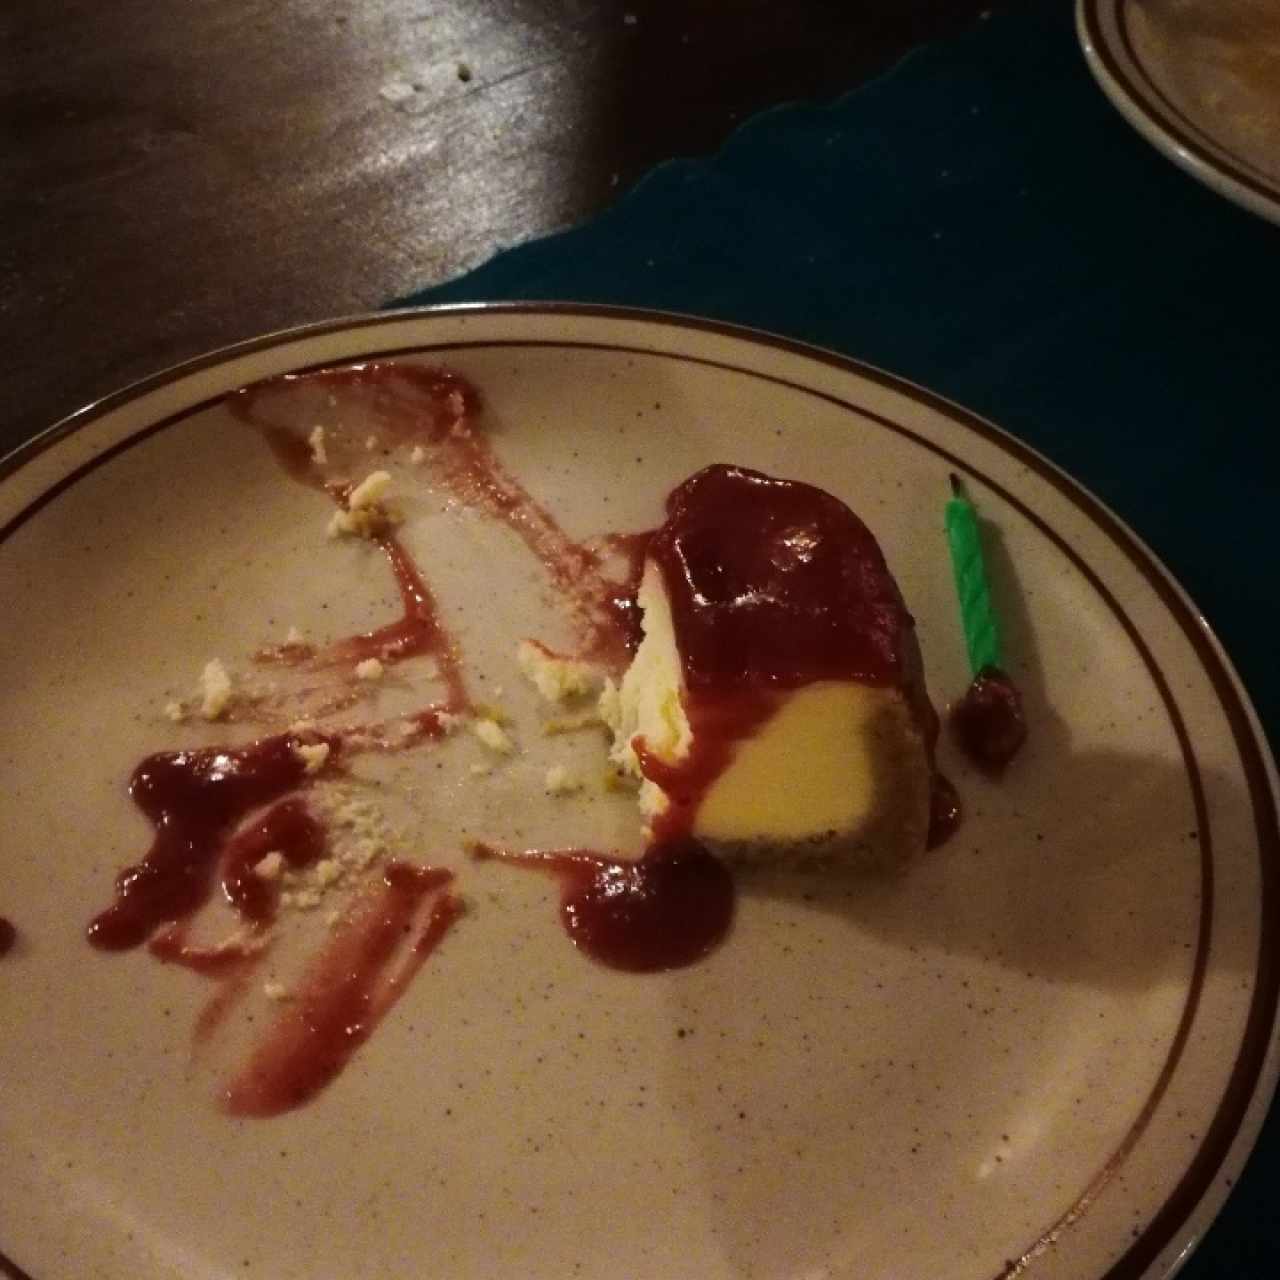 lo que quedó del cheesecake